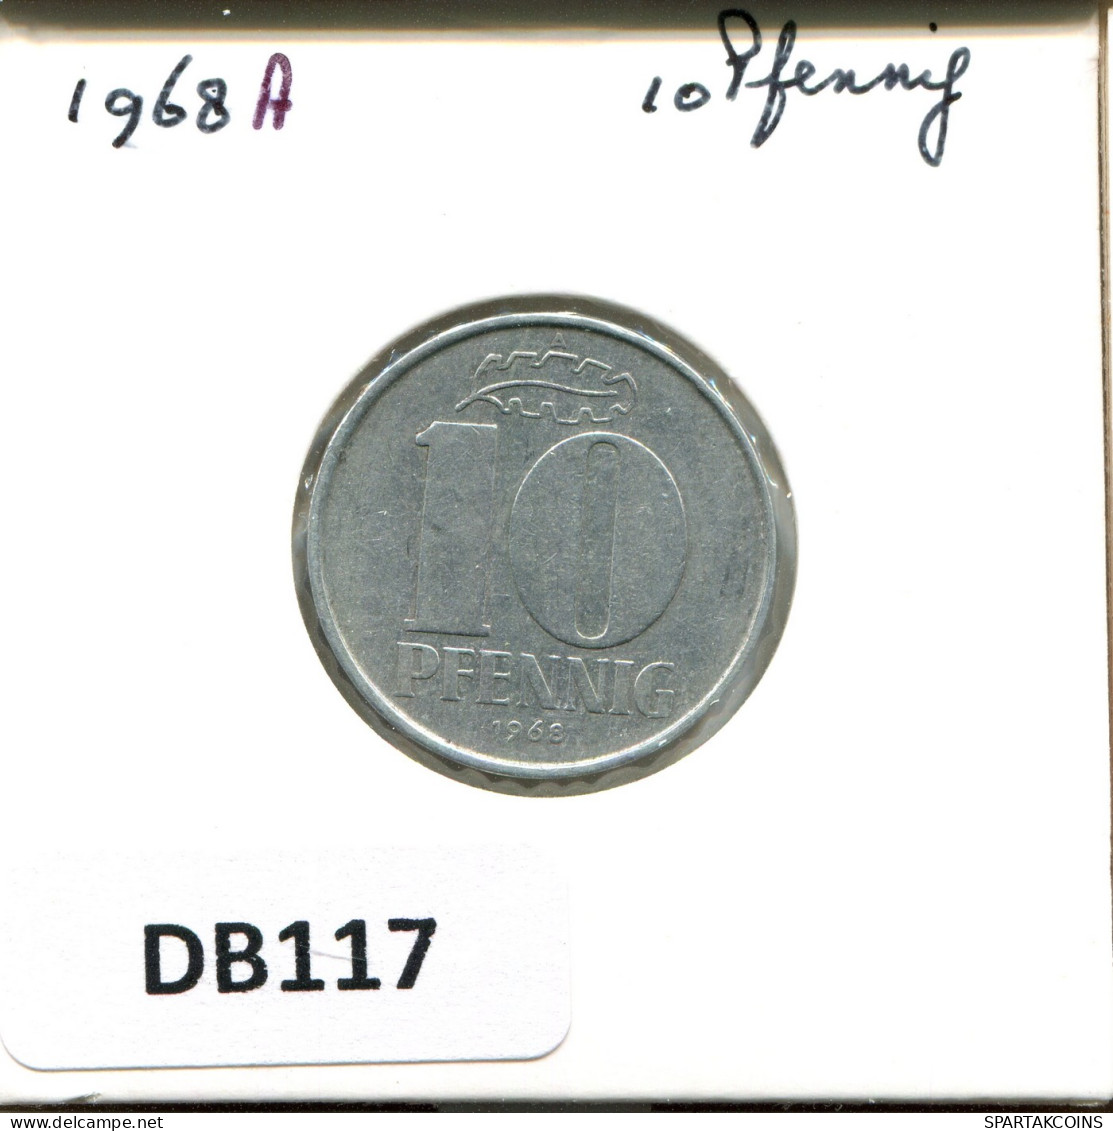 10 PFENNIG 1968 A DDR EAST ALLEMAGNE Pièce GERMANY #DB117.F - 10 Pfennig